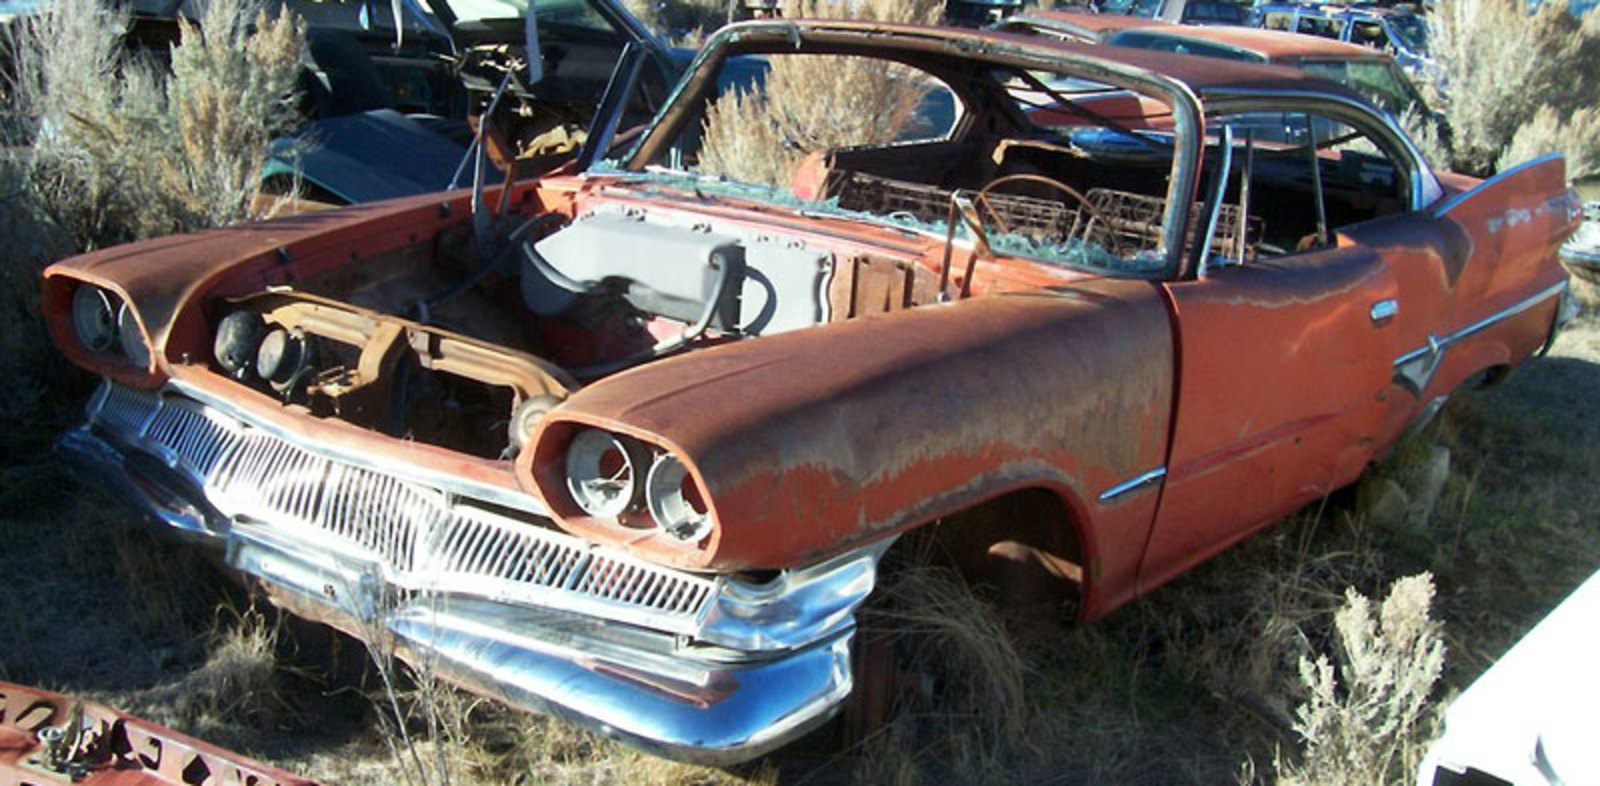 1960 Dodge Pioneer 2 door hardtop burned. 1960 Pioneer 2 door hardtop